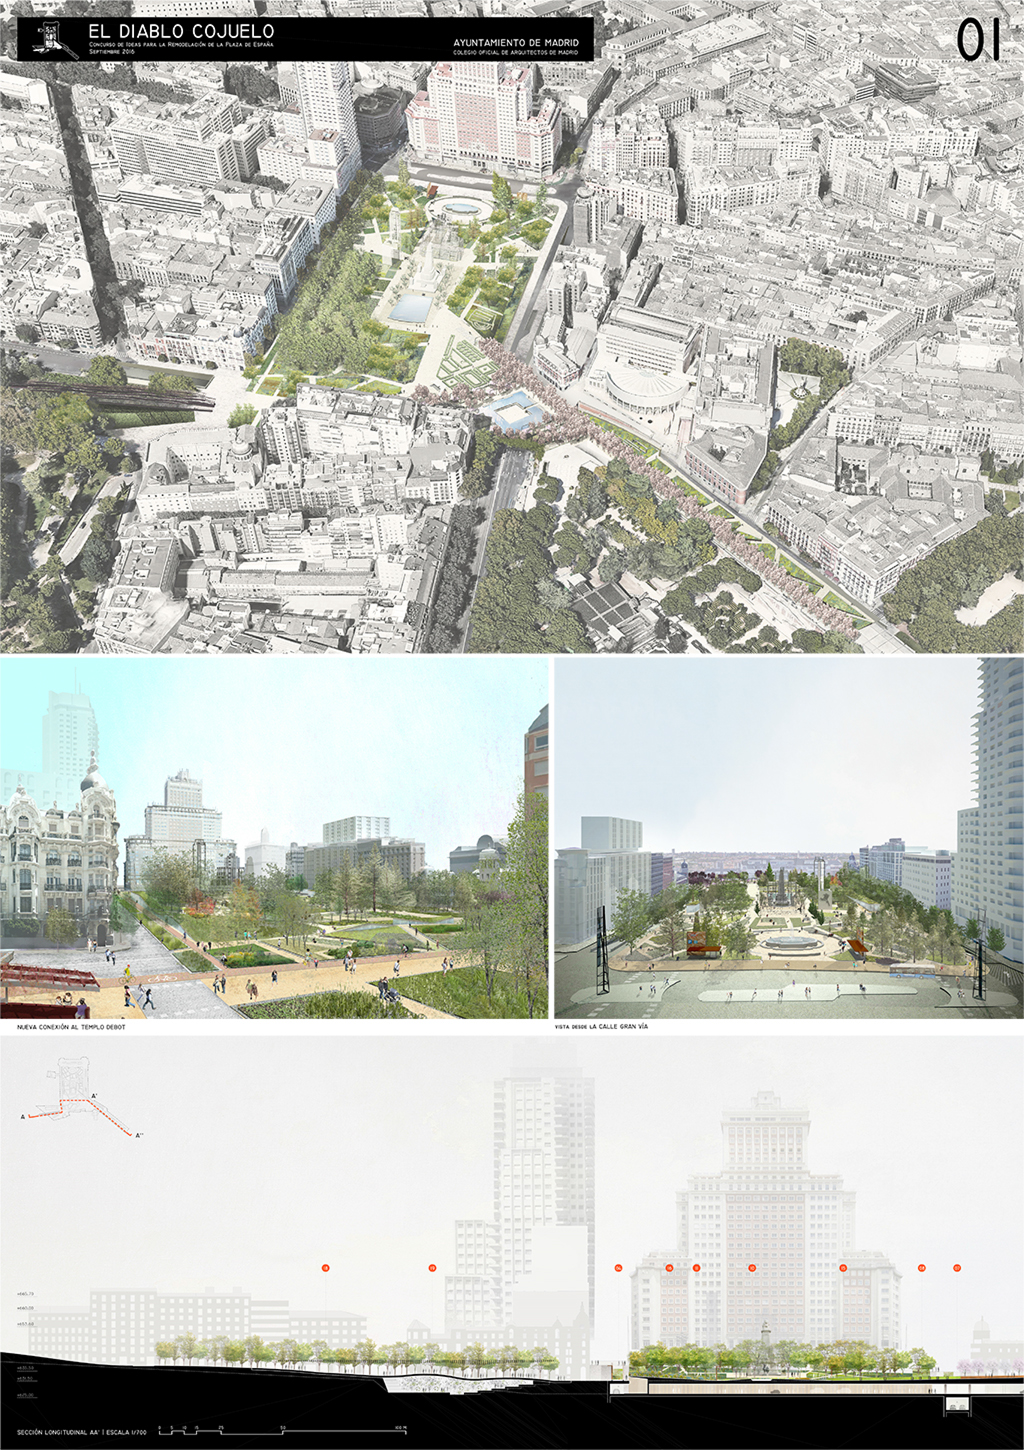 Proyecto 26 para la Remodelación de Plaza España: El diablo cojuelo